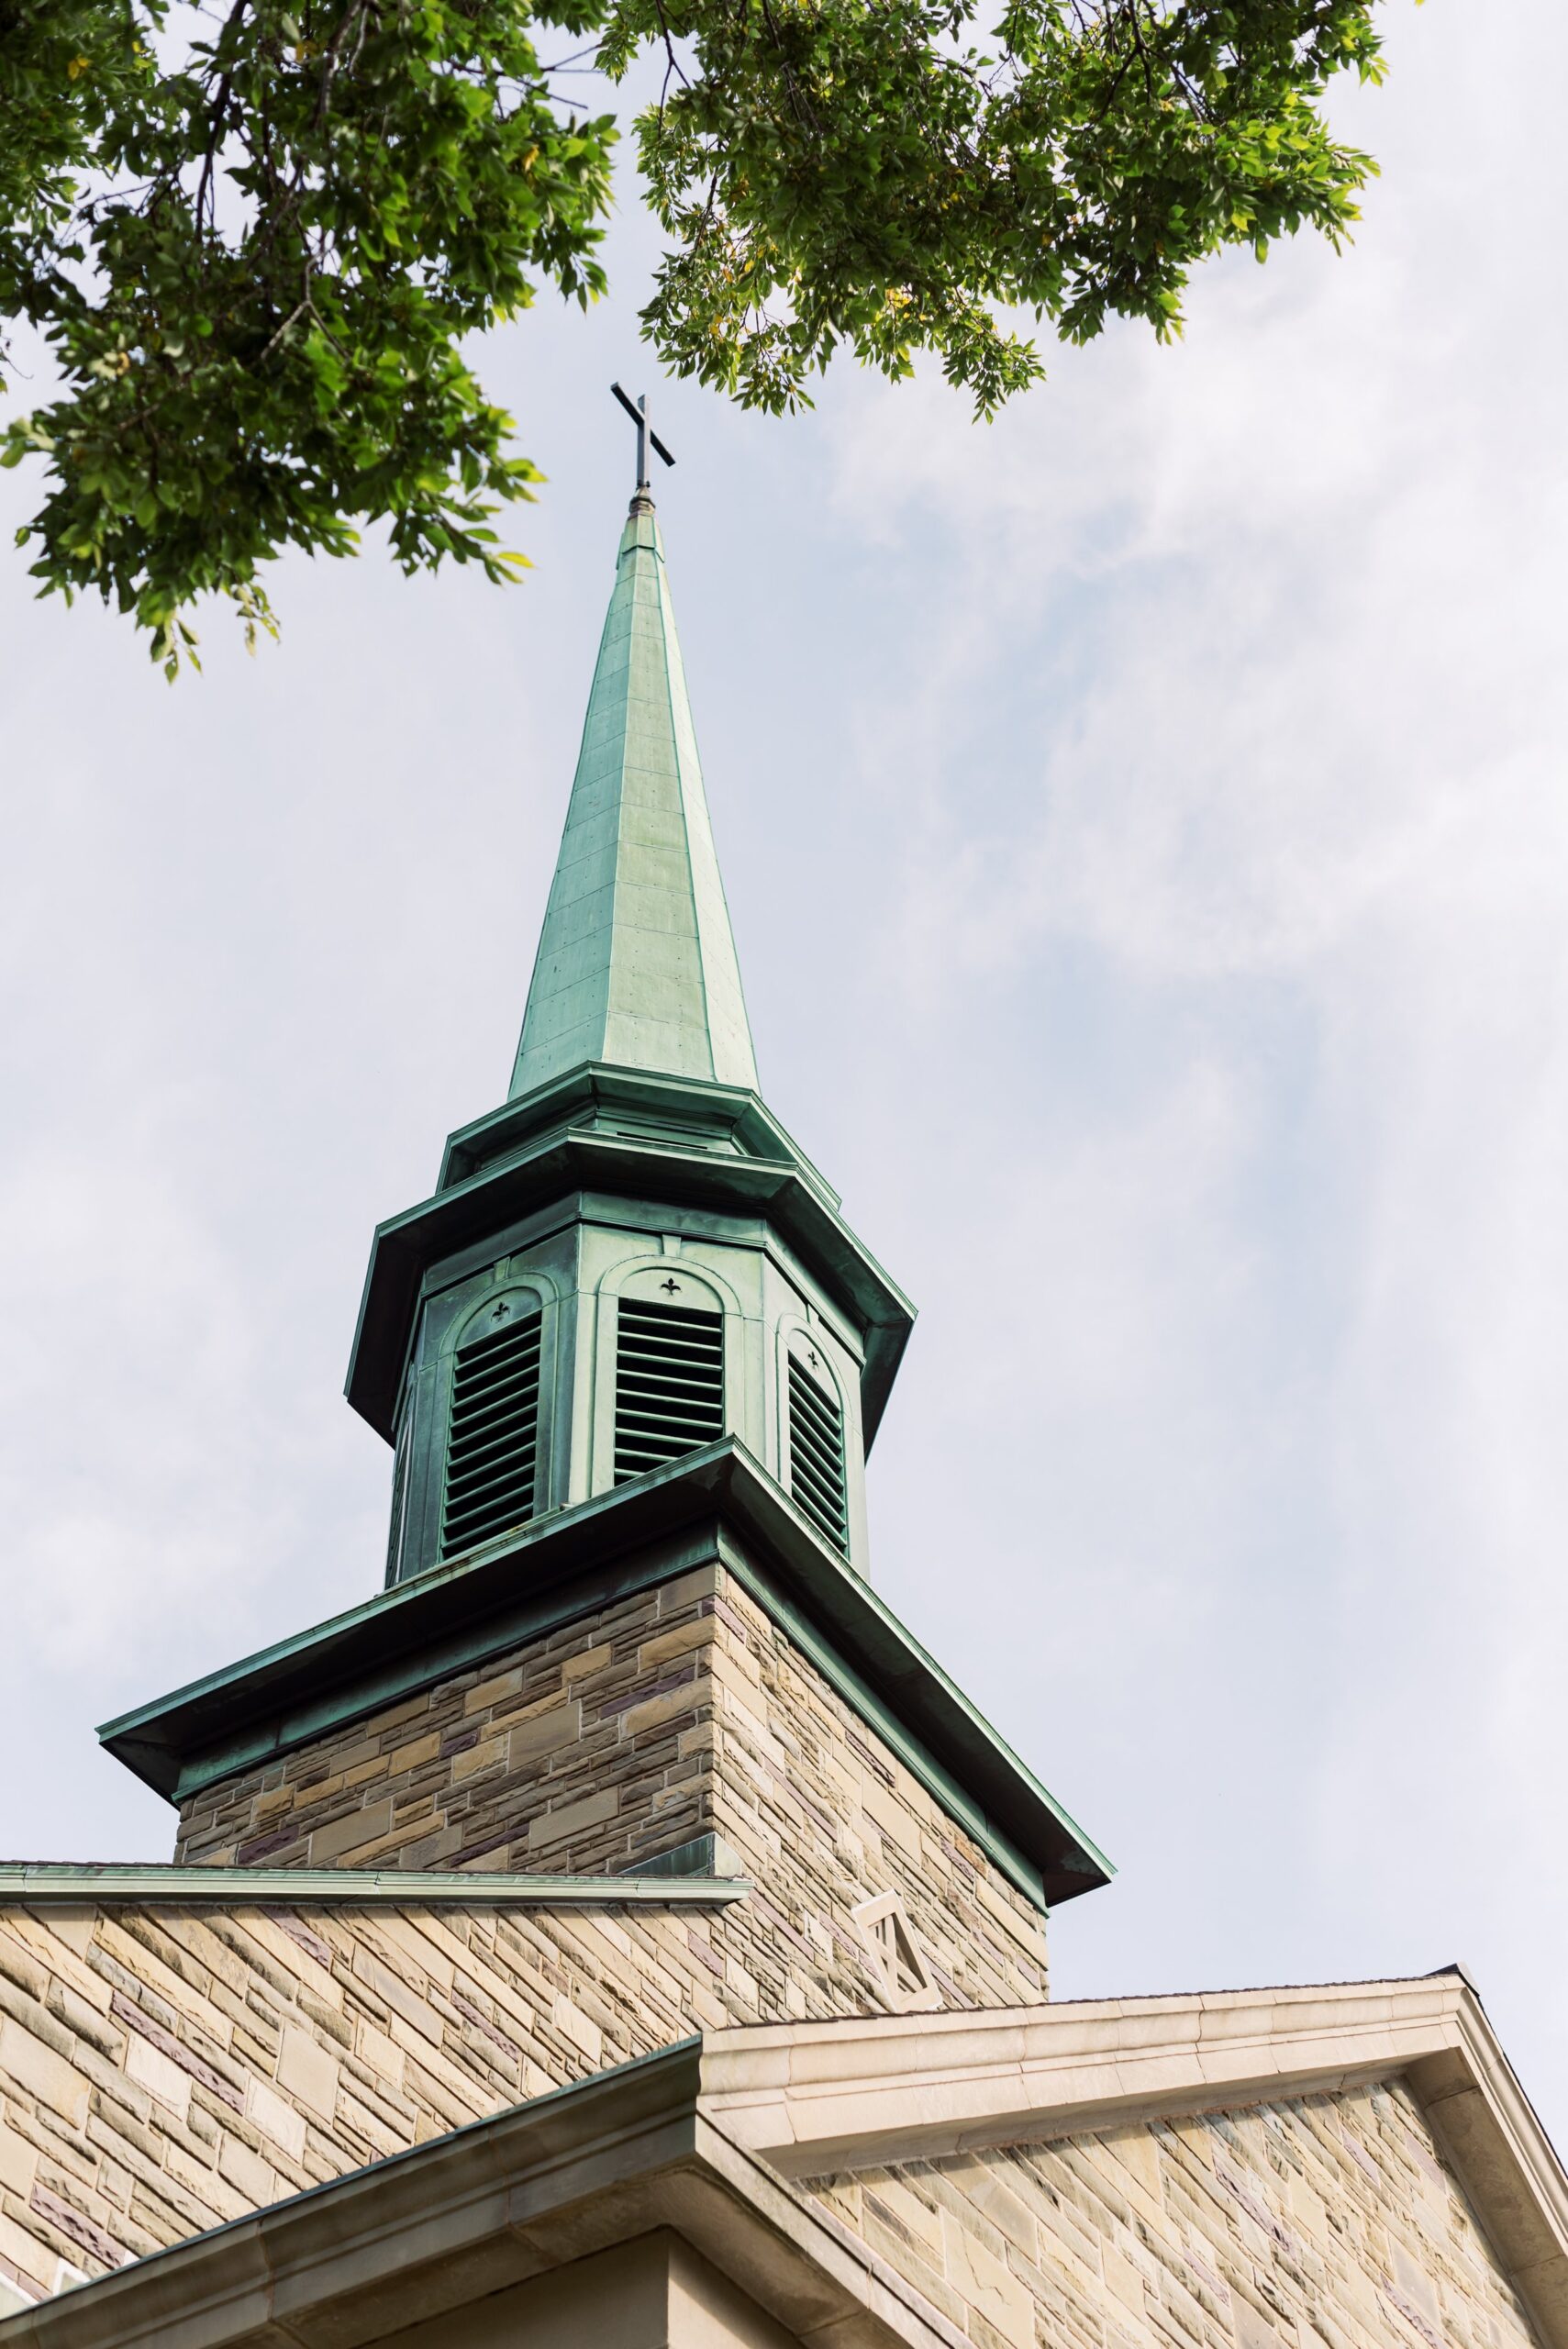 Saint Thomas Aquinas Church in Halifax, Nova Scotia